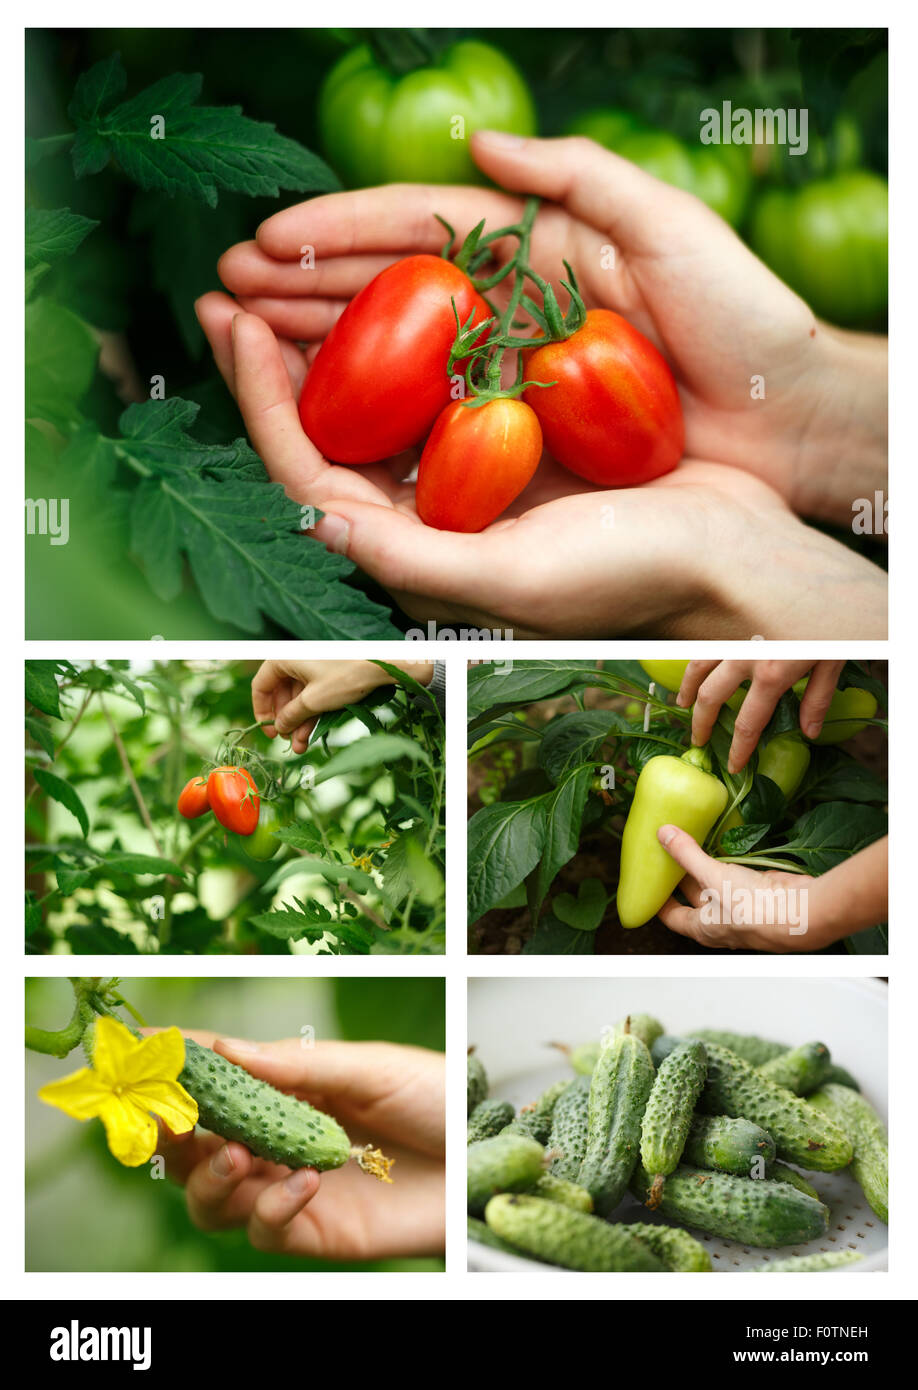 La récolte de légumes collage.Locavore, manger propre,l'agriculture biologique, l'agriculture locale,concept de plus en plus. Selective focus Banque D'Images